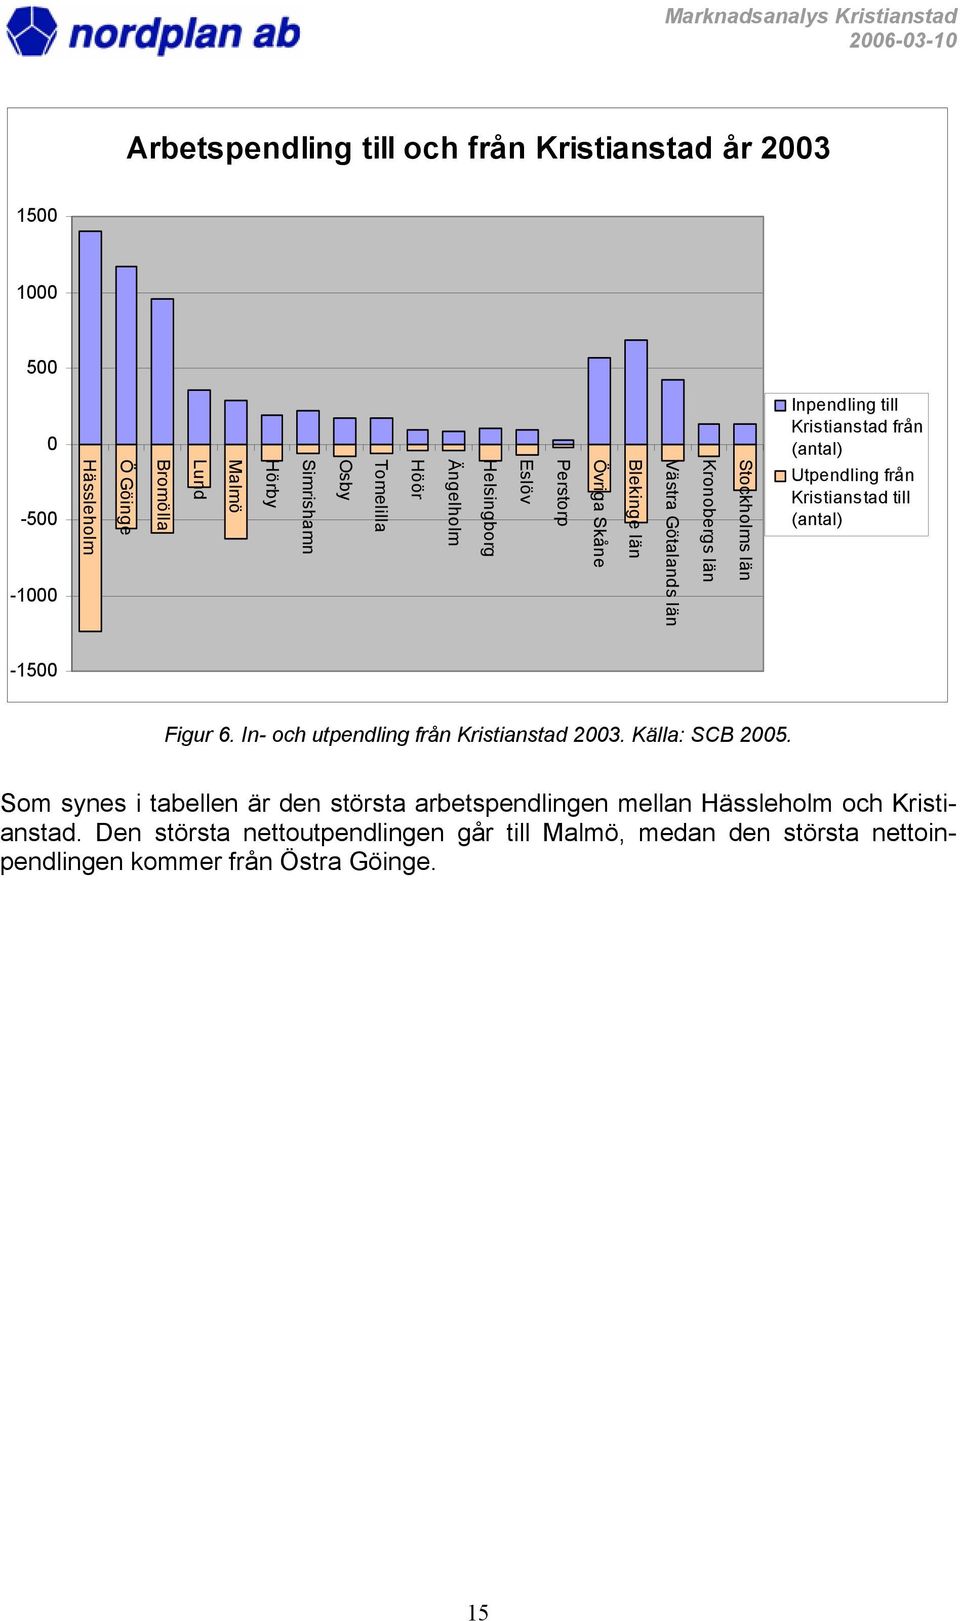 Utpendling från Kristianstad till (antal) -1500 Figur 6. In- och utpendling från Kristianstad 2003. Källa: SCB 2005.